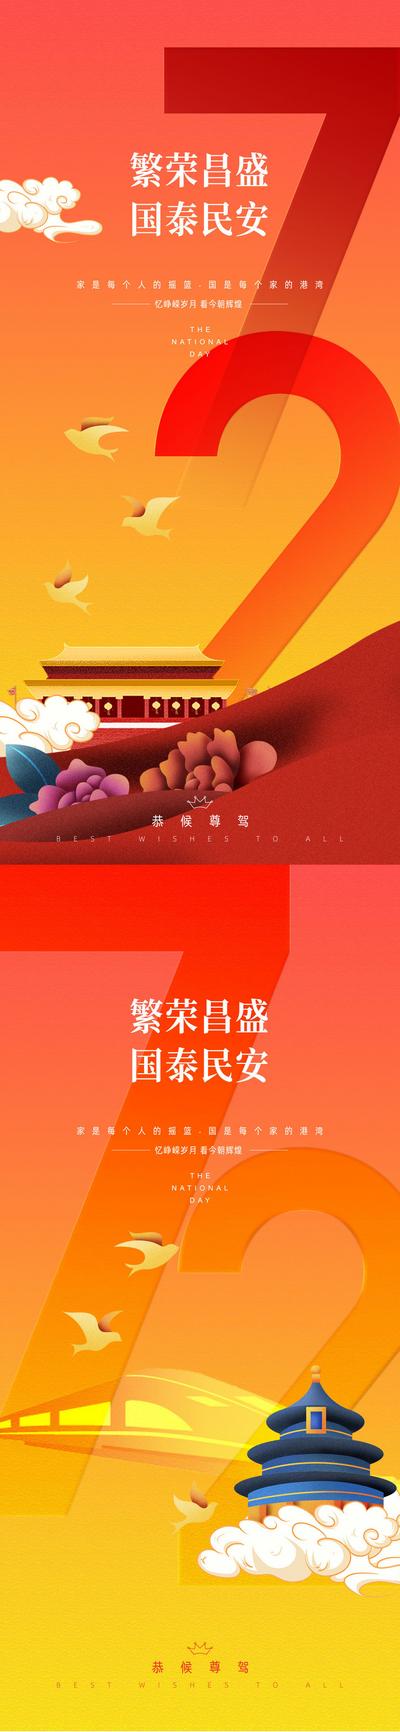 南门网 国庆节节日系列海报